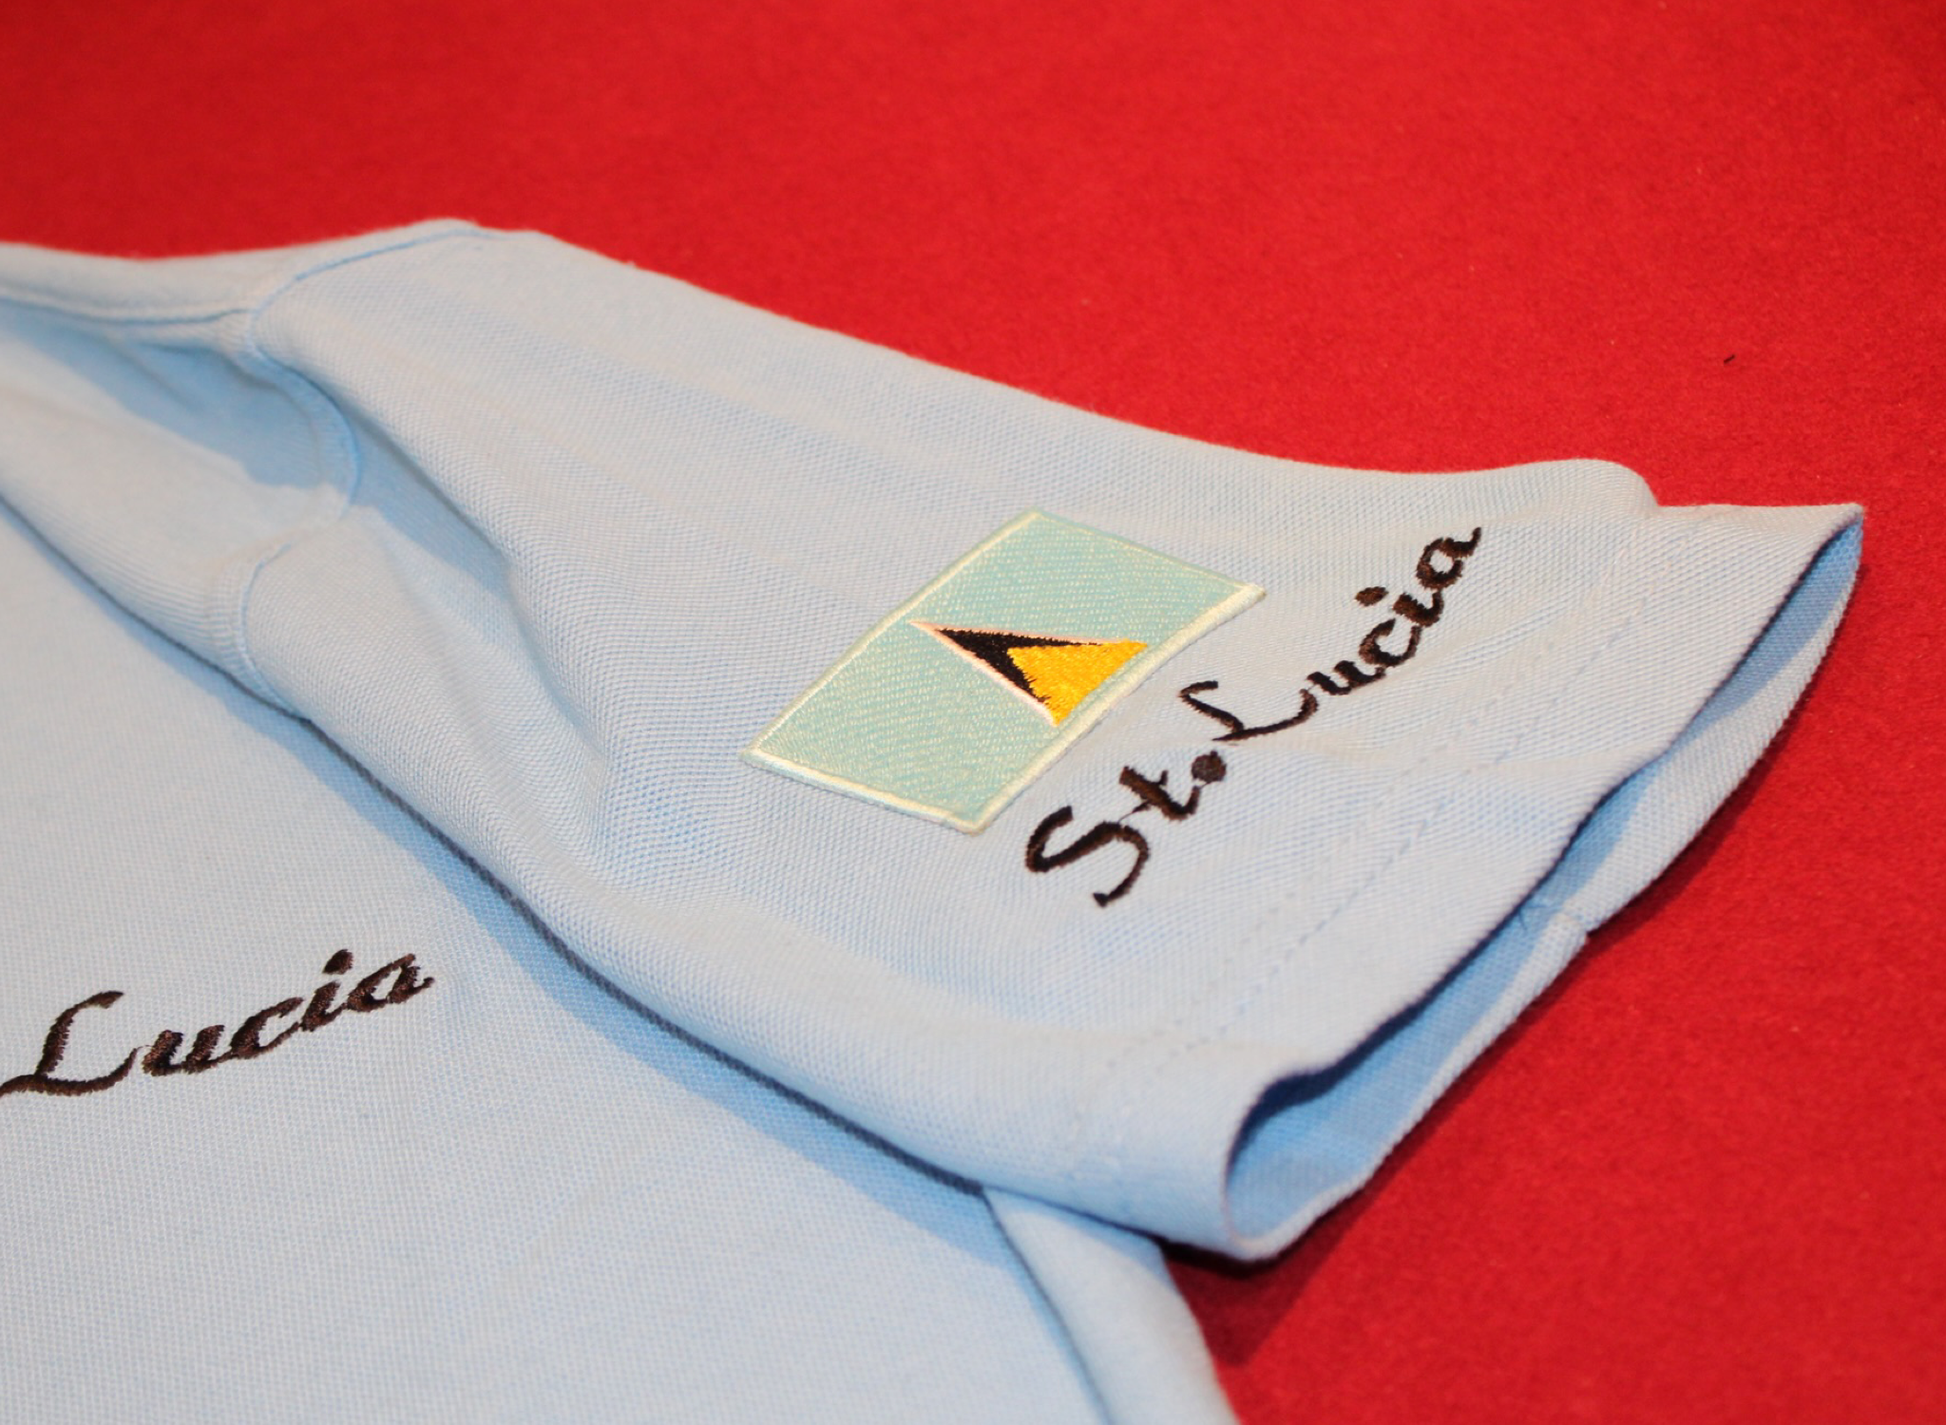 St. Lucia Polo T-Shirt